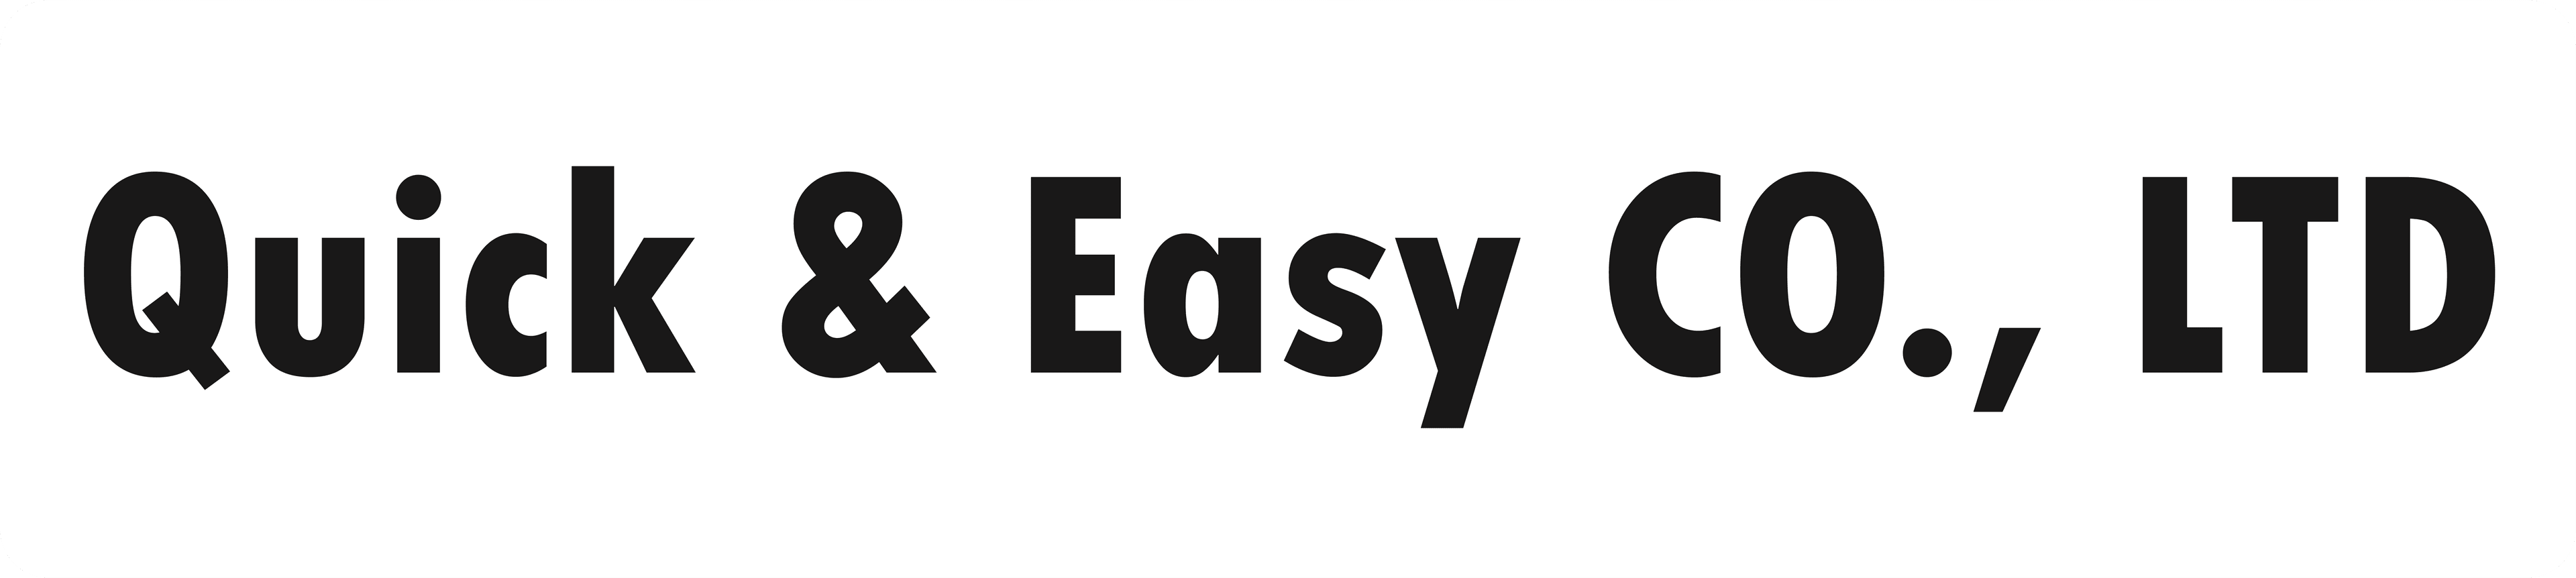 Quick & Easy Co., LTD